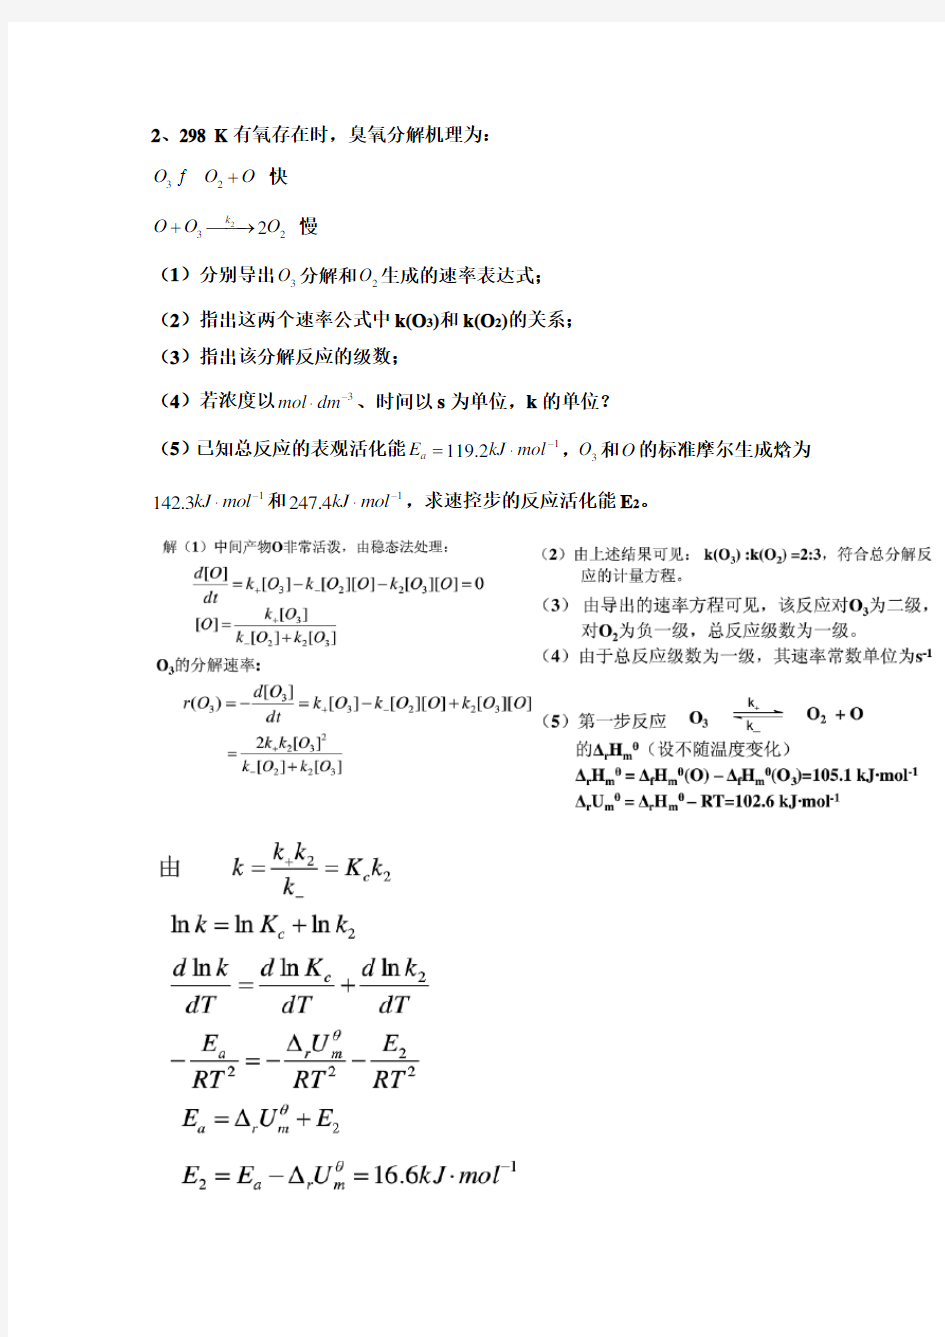 完整word版,化学动力学2(2)